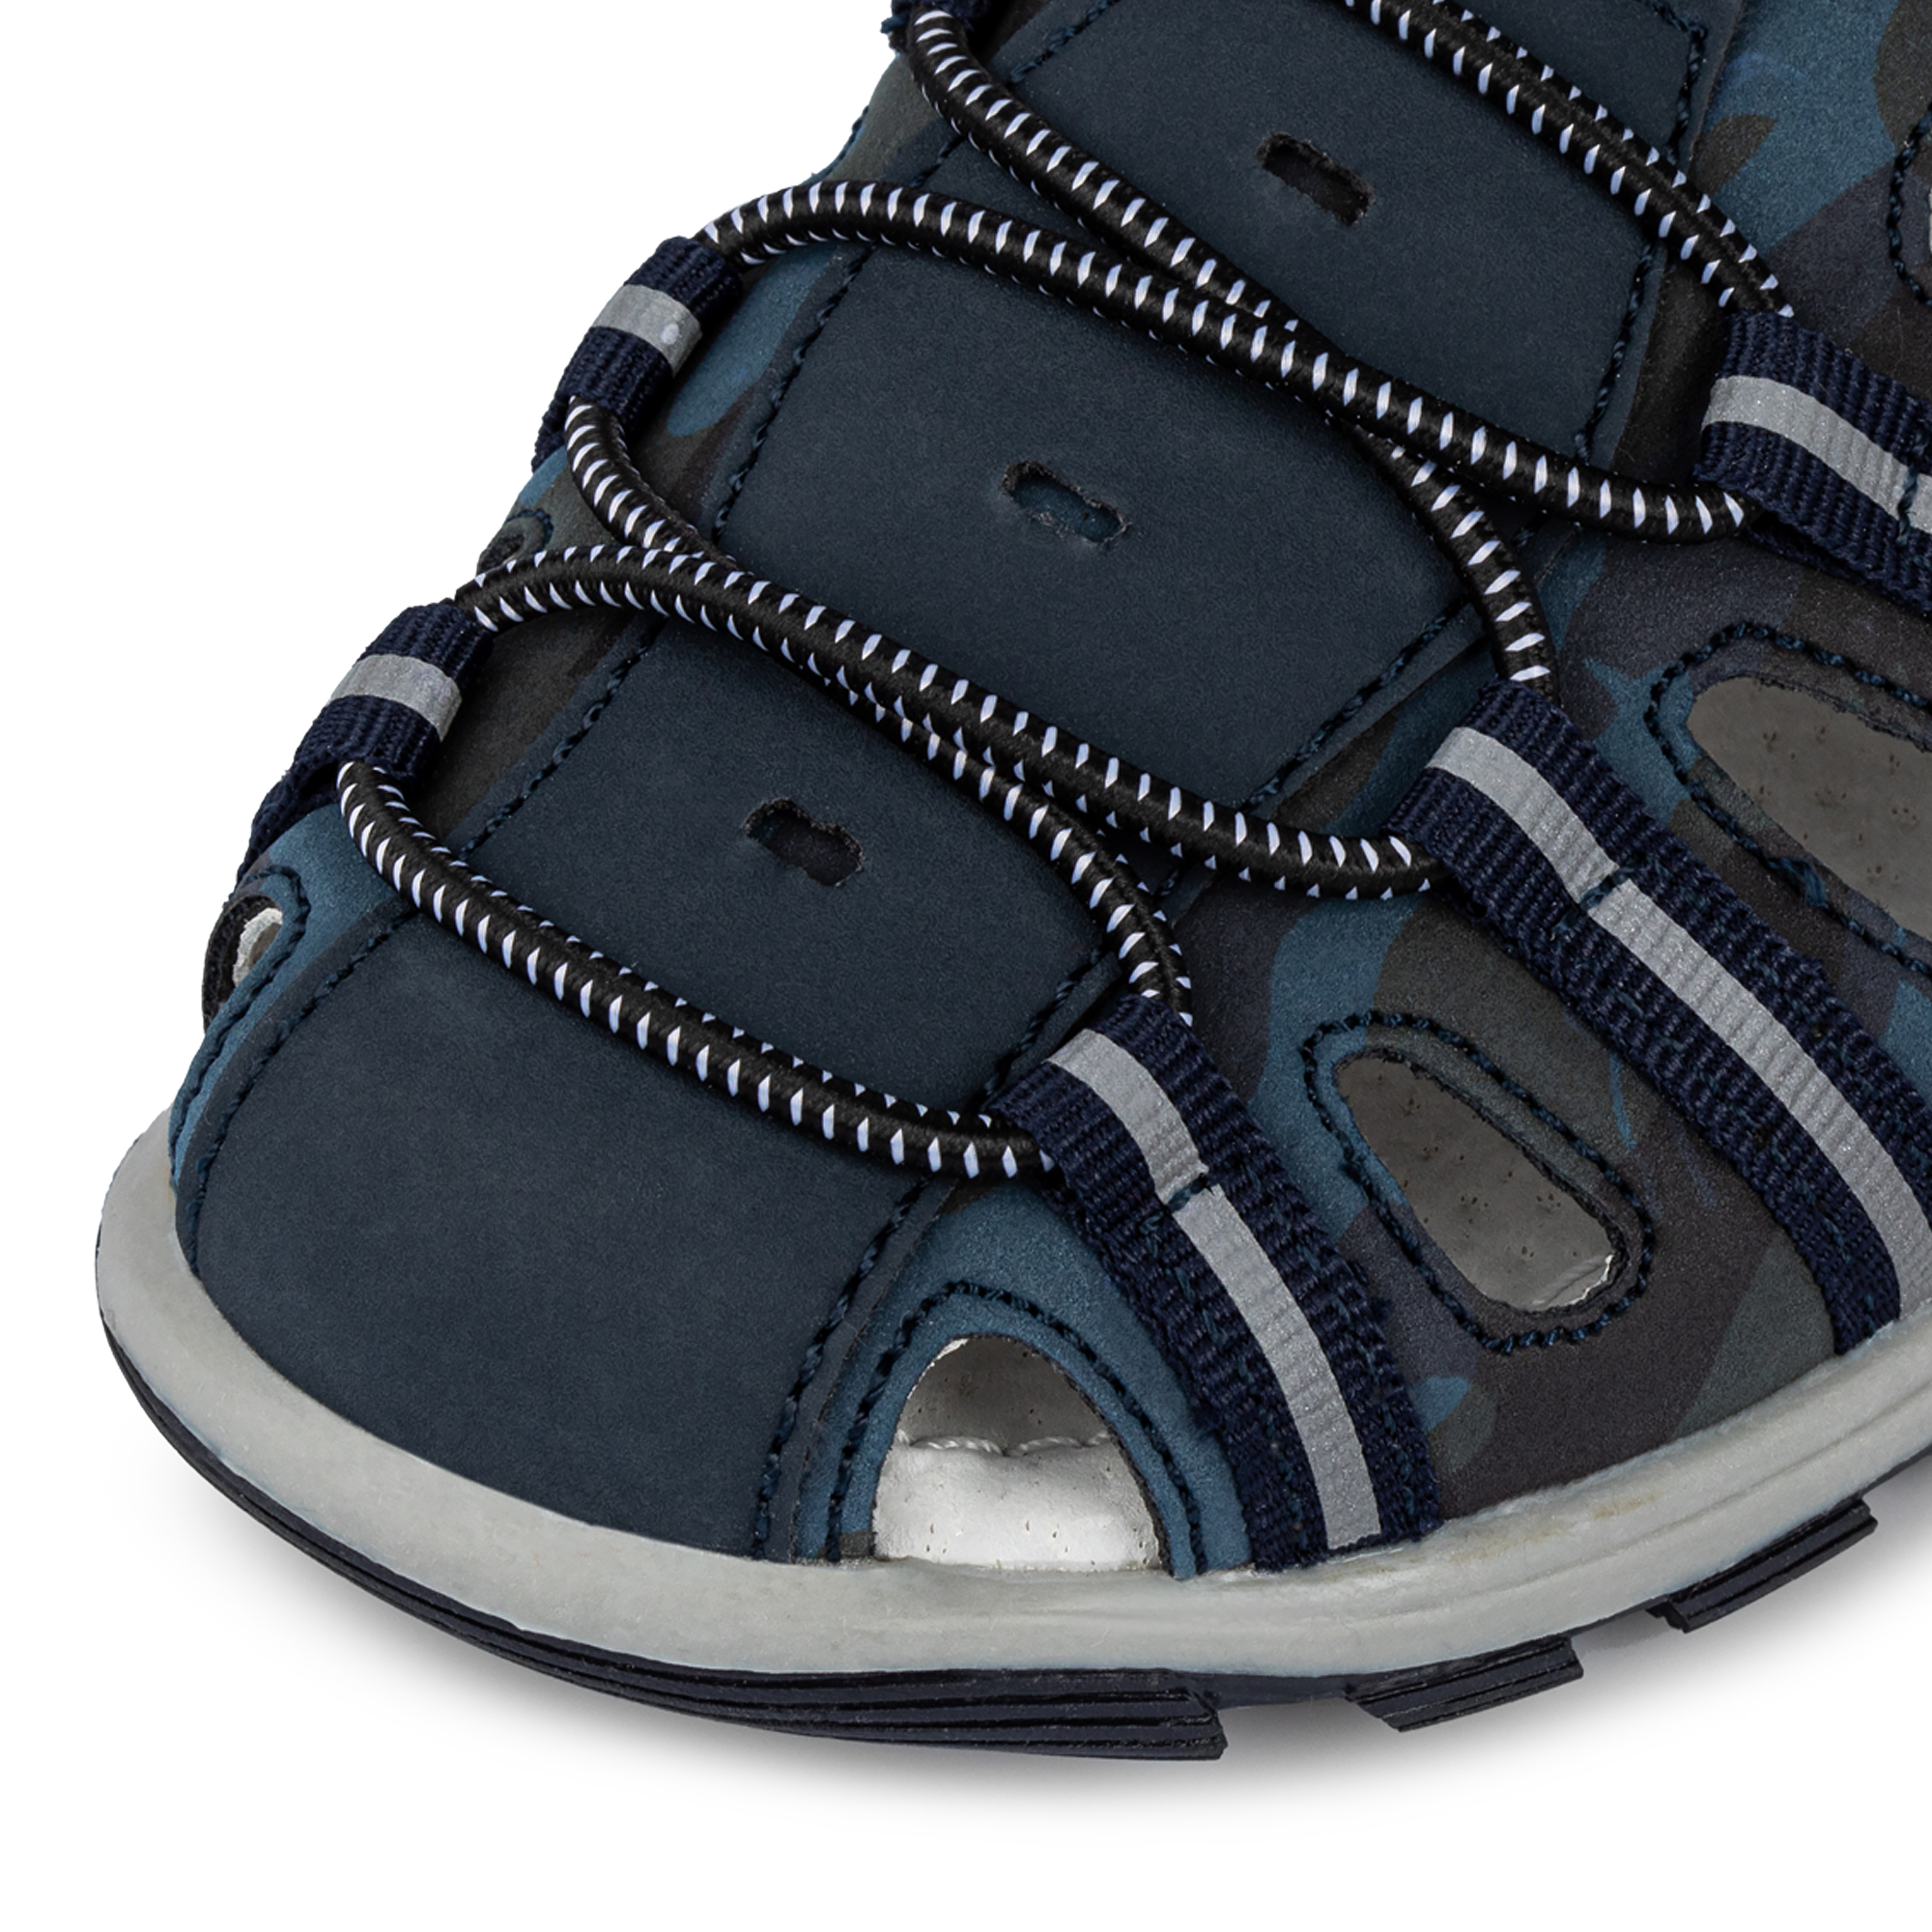 Обувь для мальчиков MUNZ YOUNG 174-050A-1603, цвет темно-синий, размер 30 - фото 4